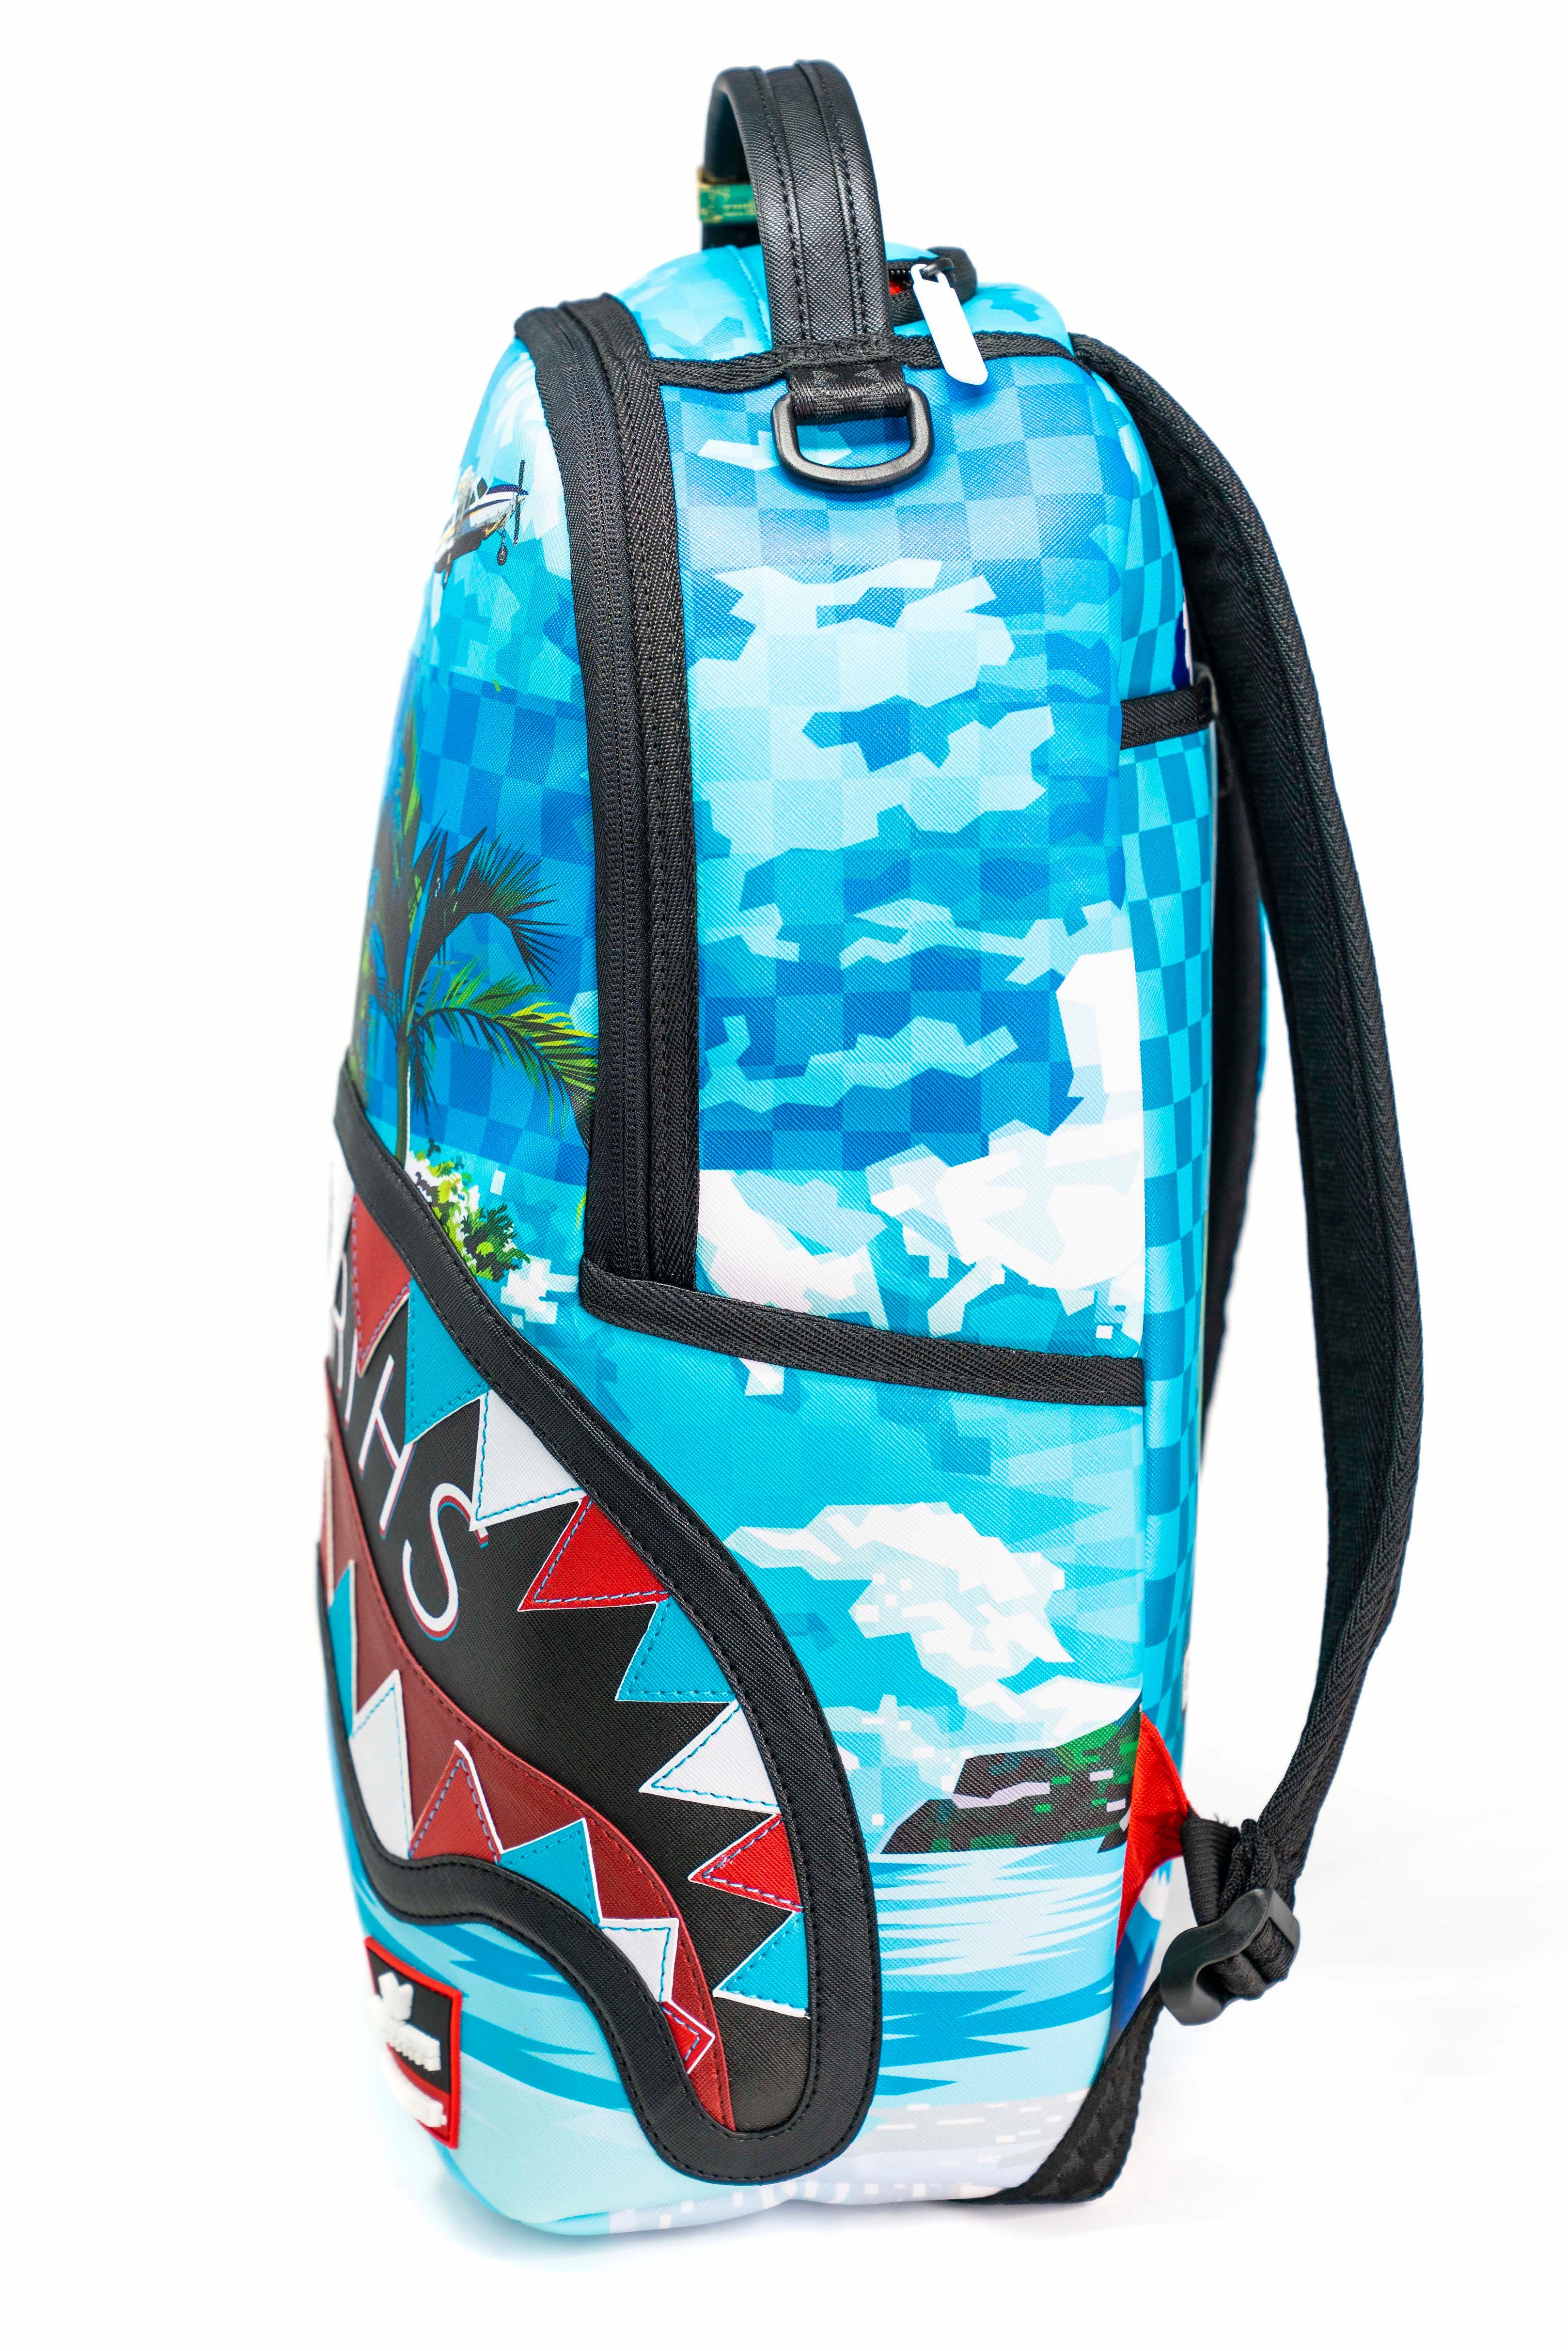 Bape shark All over printed backpack - Custom Order On